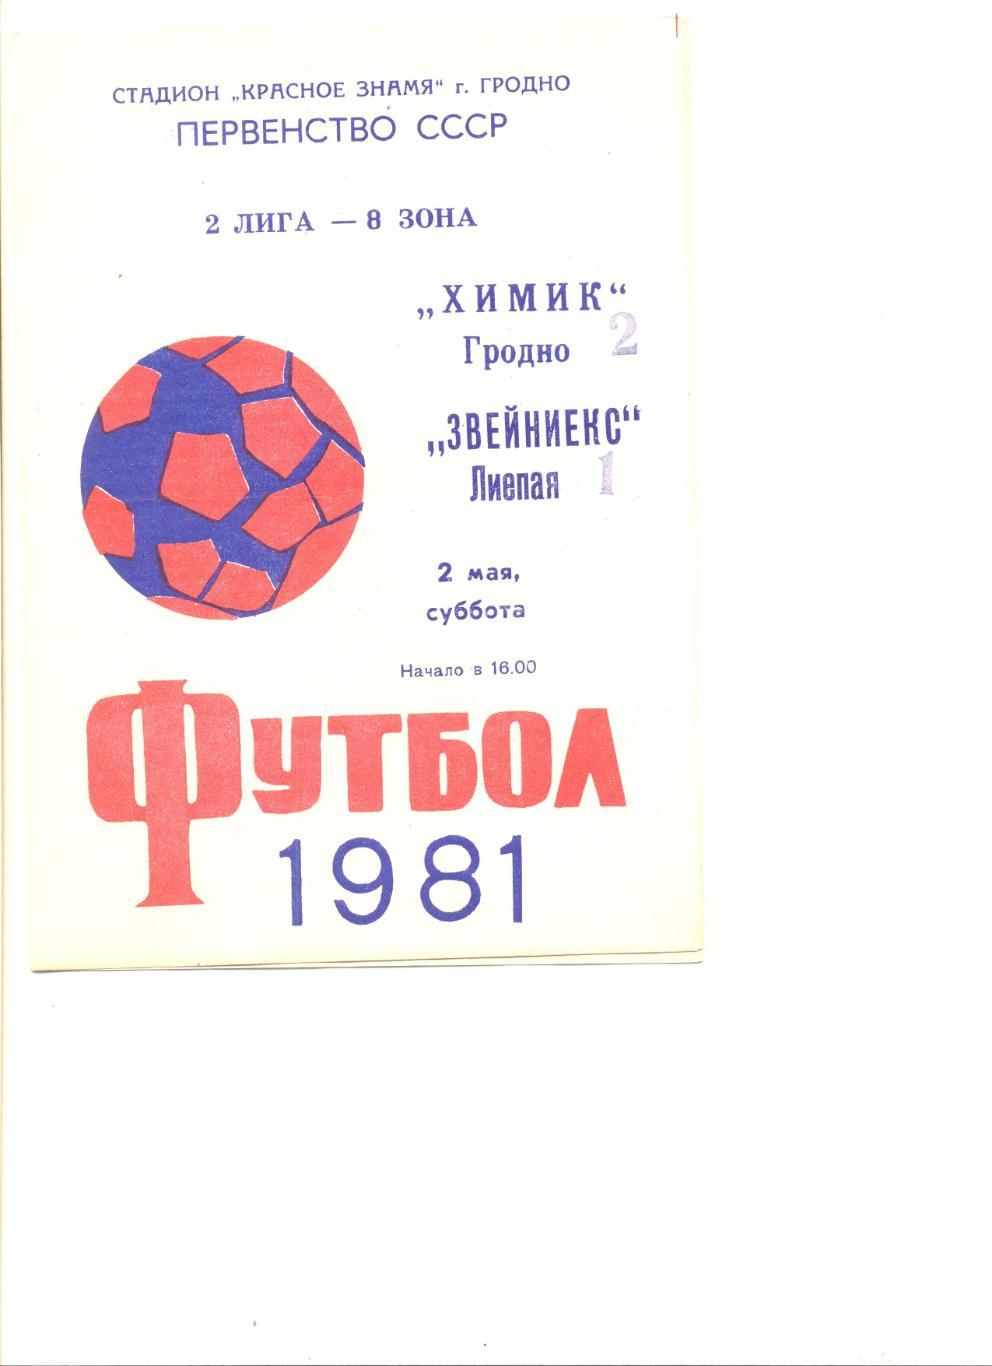 Химик Гродно - Звейниекс Лиепая 02.05.1981 г.